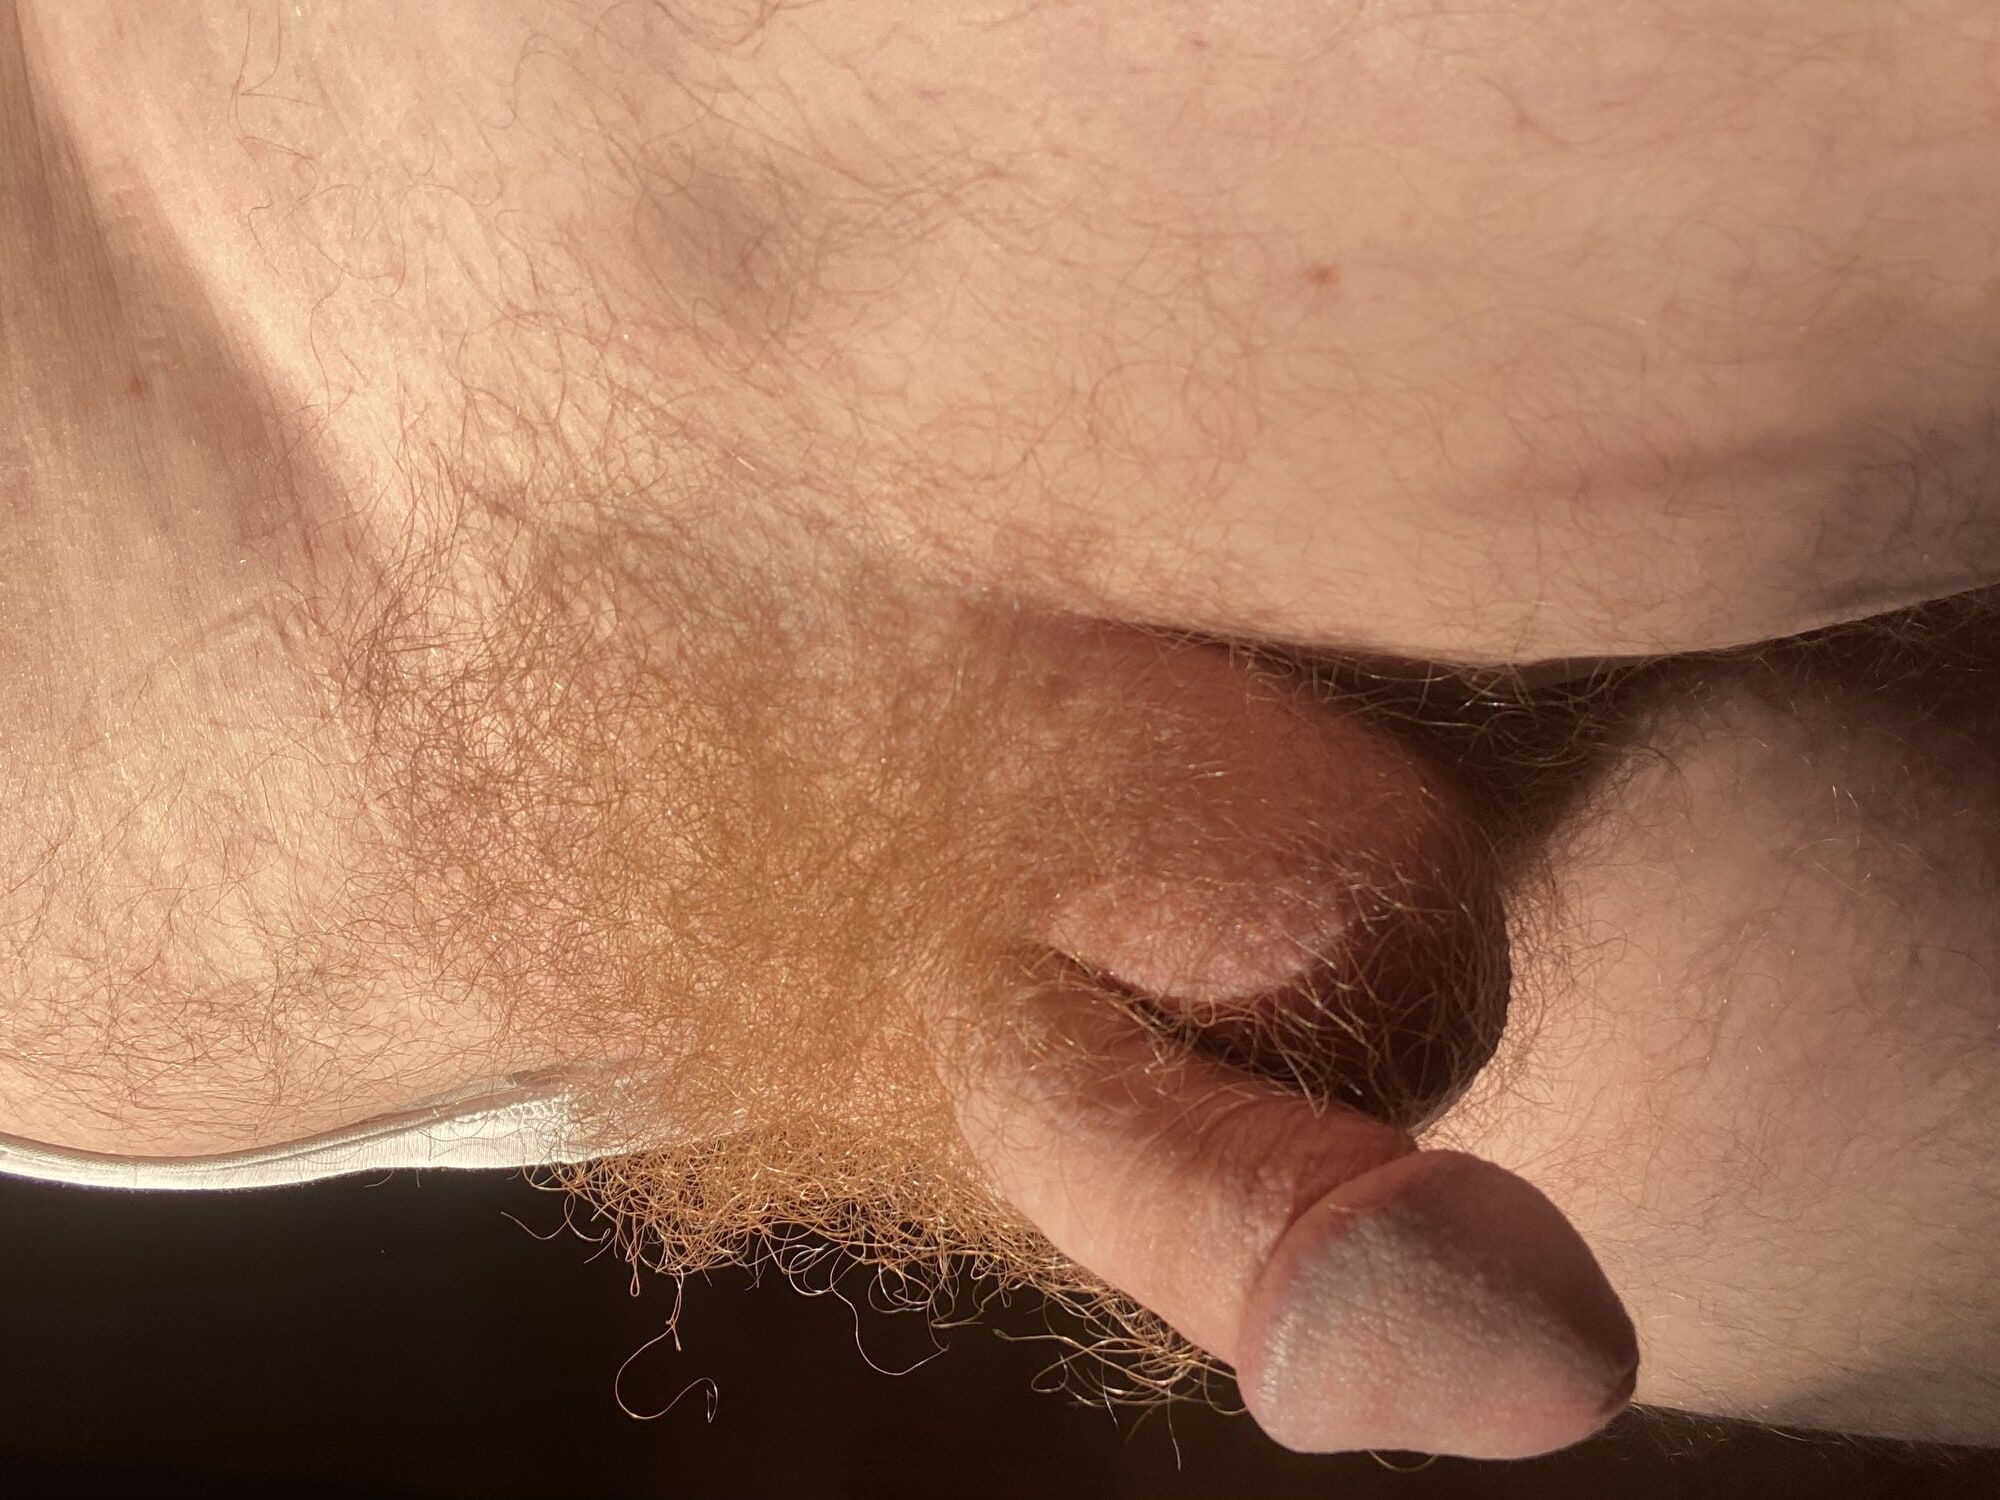 My hairy flaccid cock #14